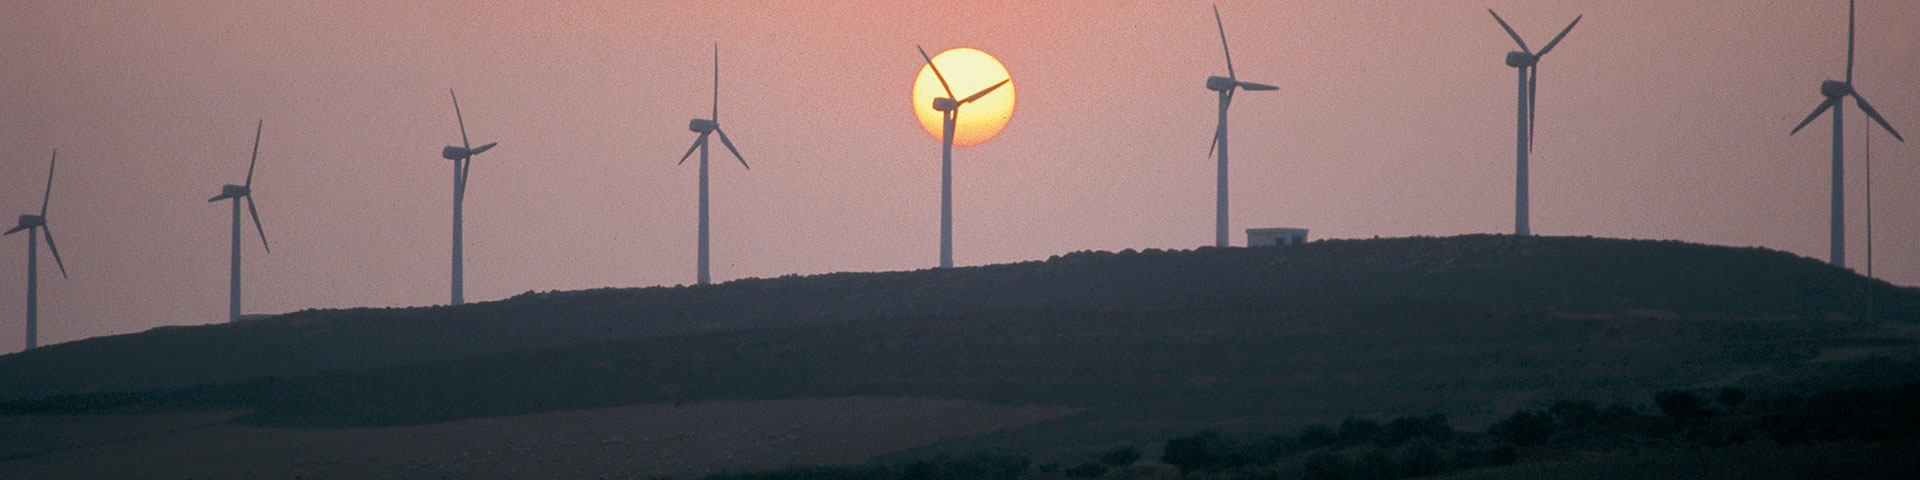 Éoliennes sur une colline lors d'un coucher de soleil.